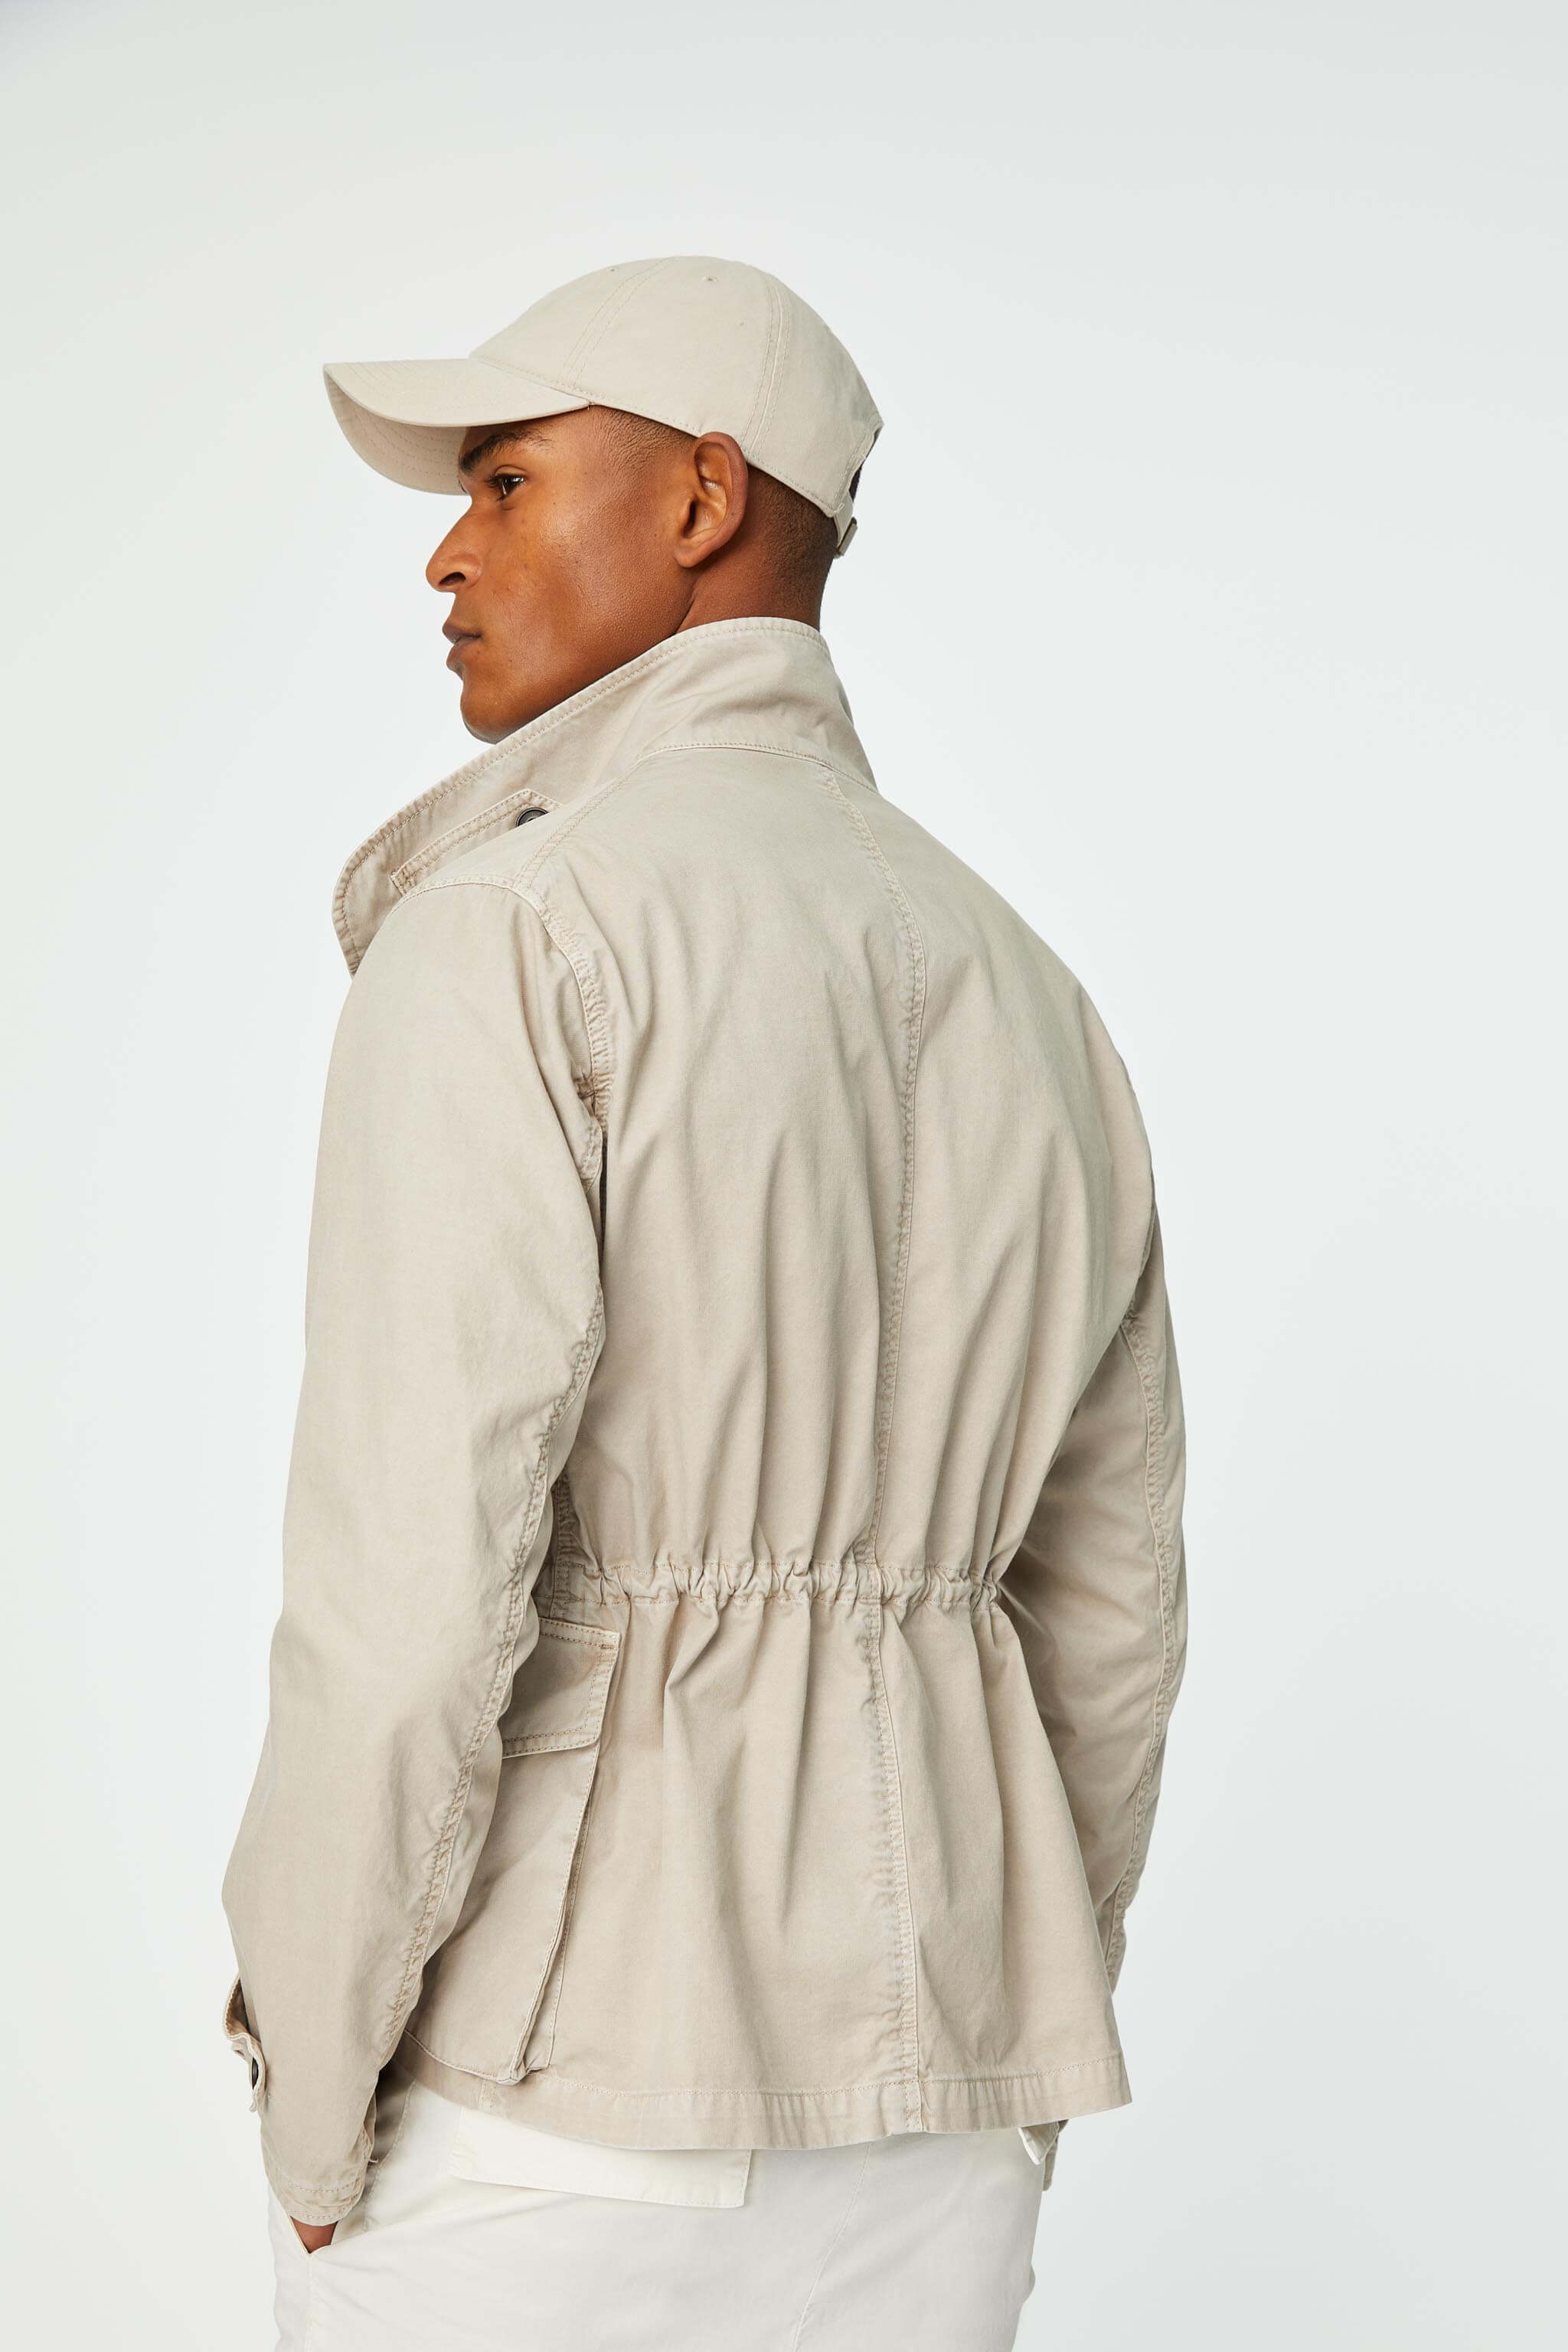 Garment-dyed beige field jacket